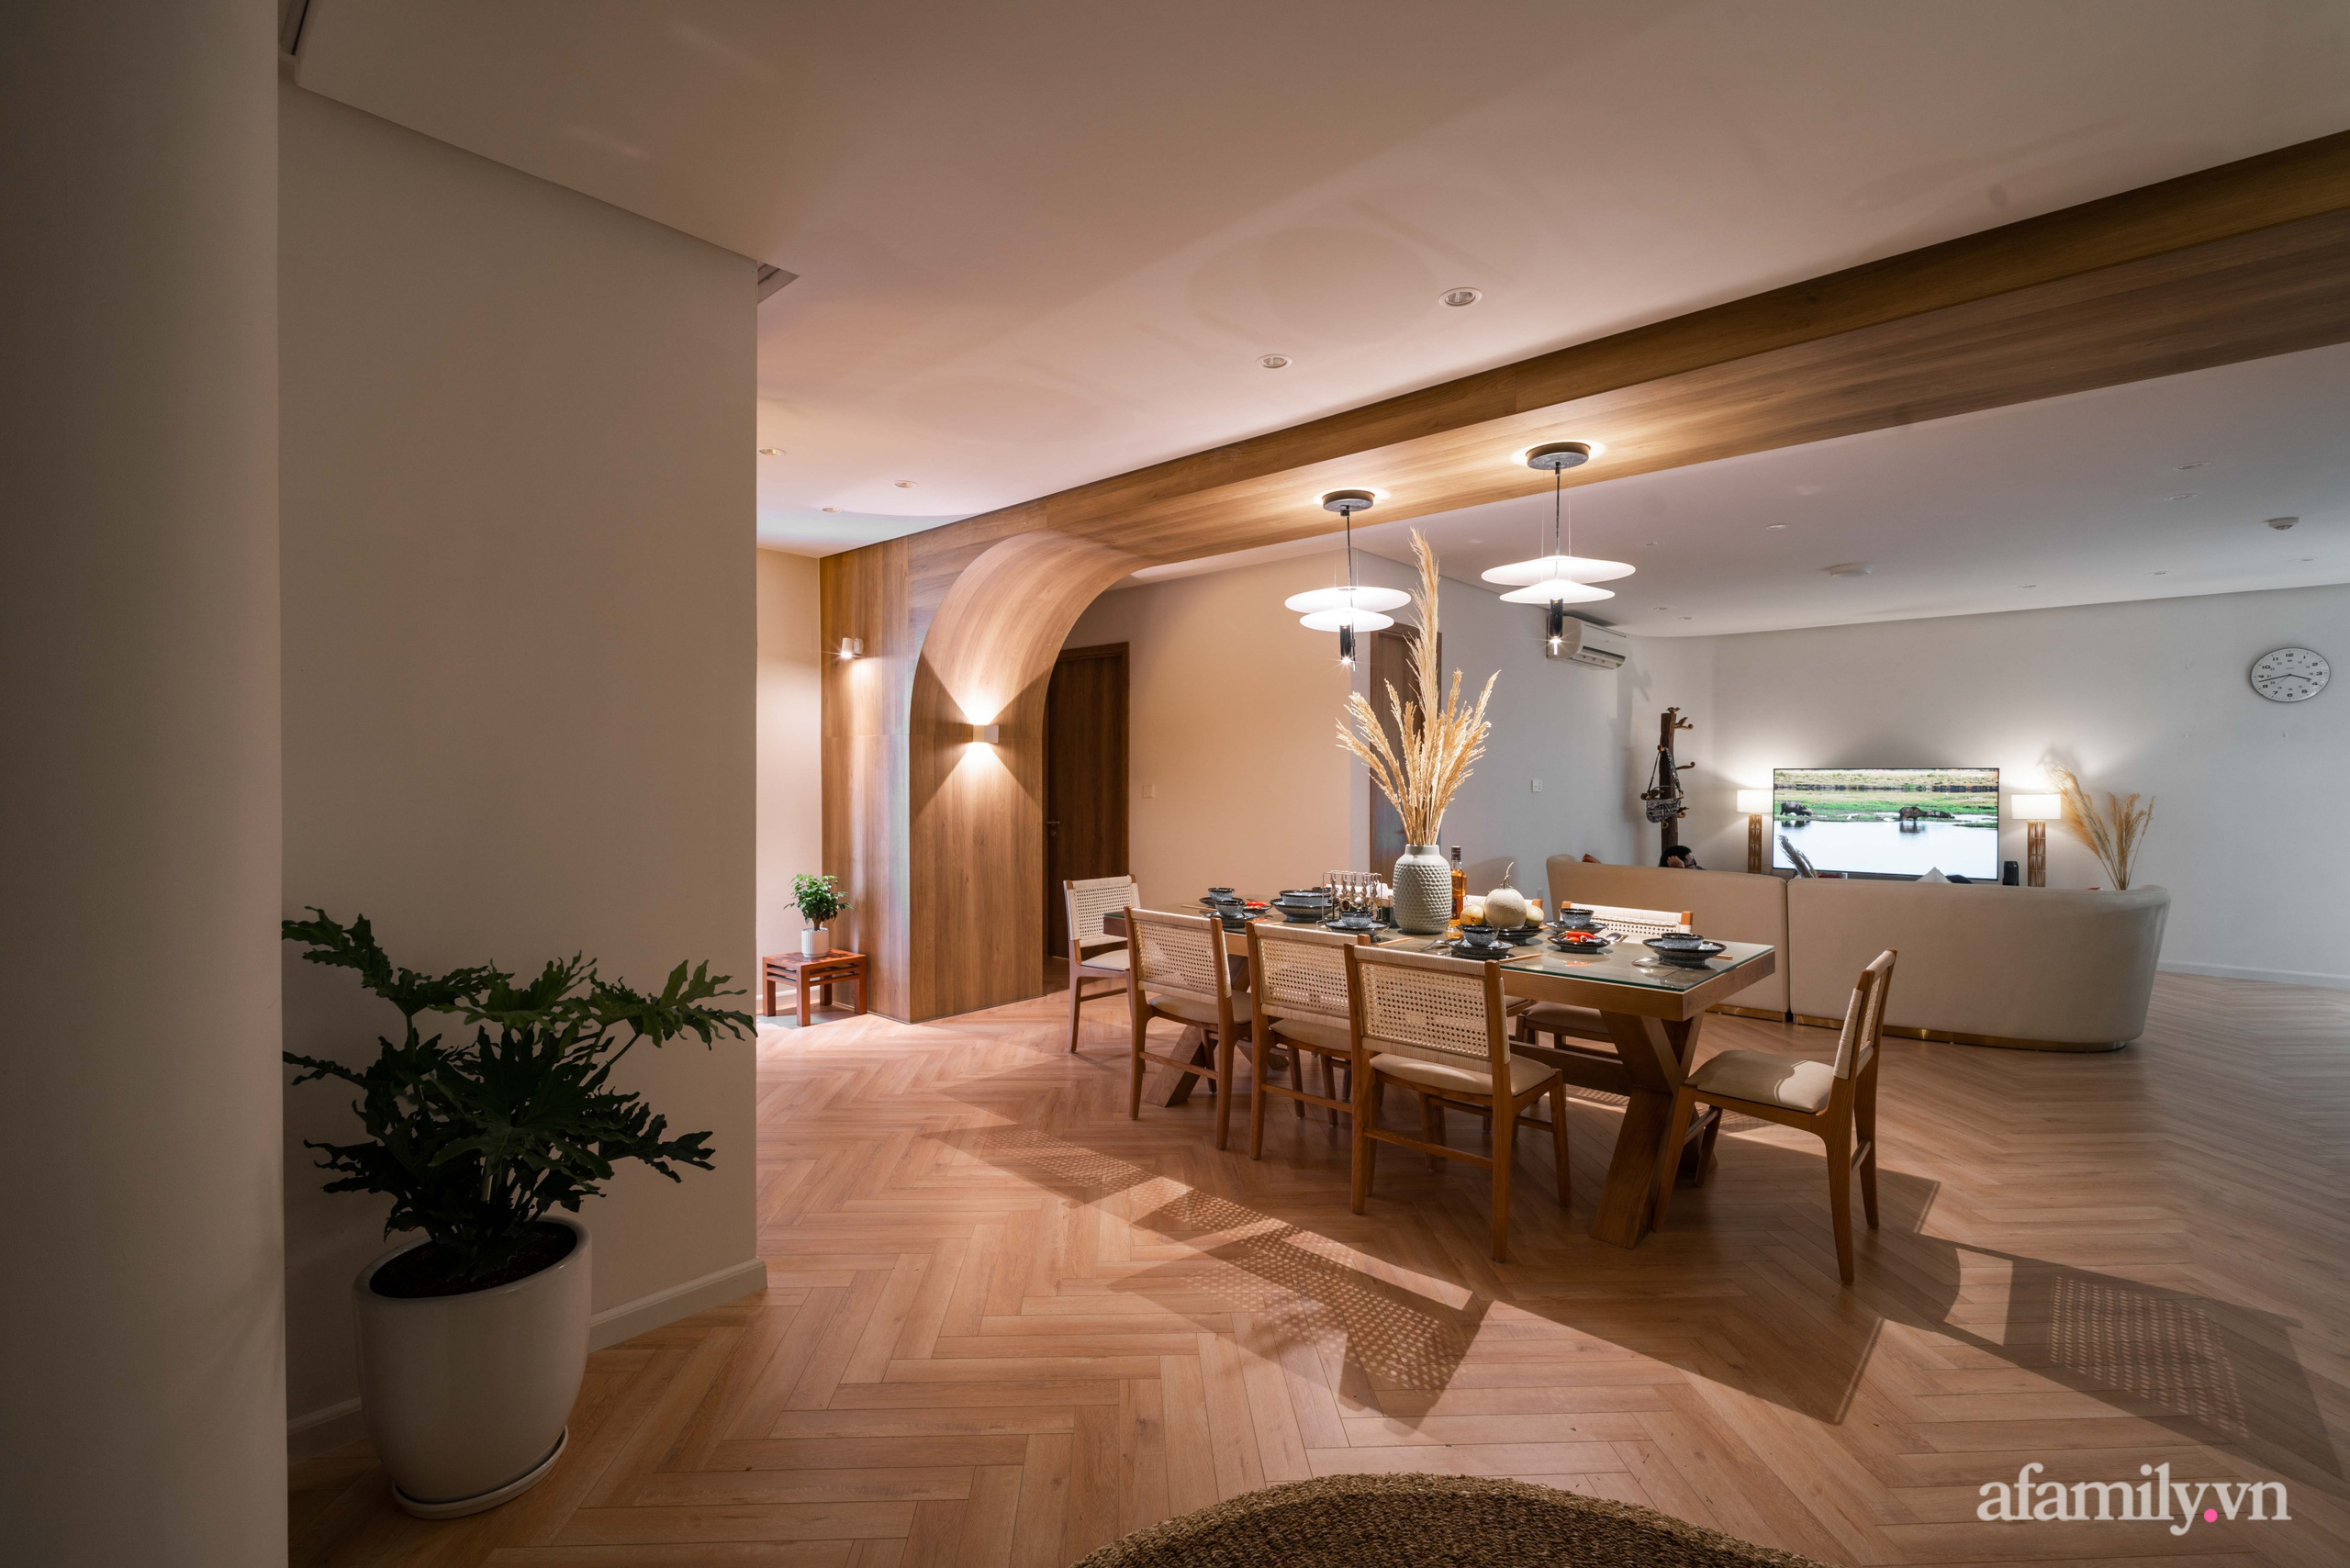 Căn hộ 180m² đẹp tinh tế và sang trọng với tông màu gỗ kết hợp sắc trắng hiện đại ở Hoàng Đạo Thúy, Hà Nội - Ảnh 12.